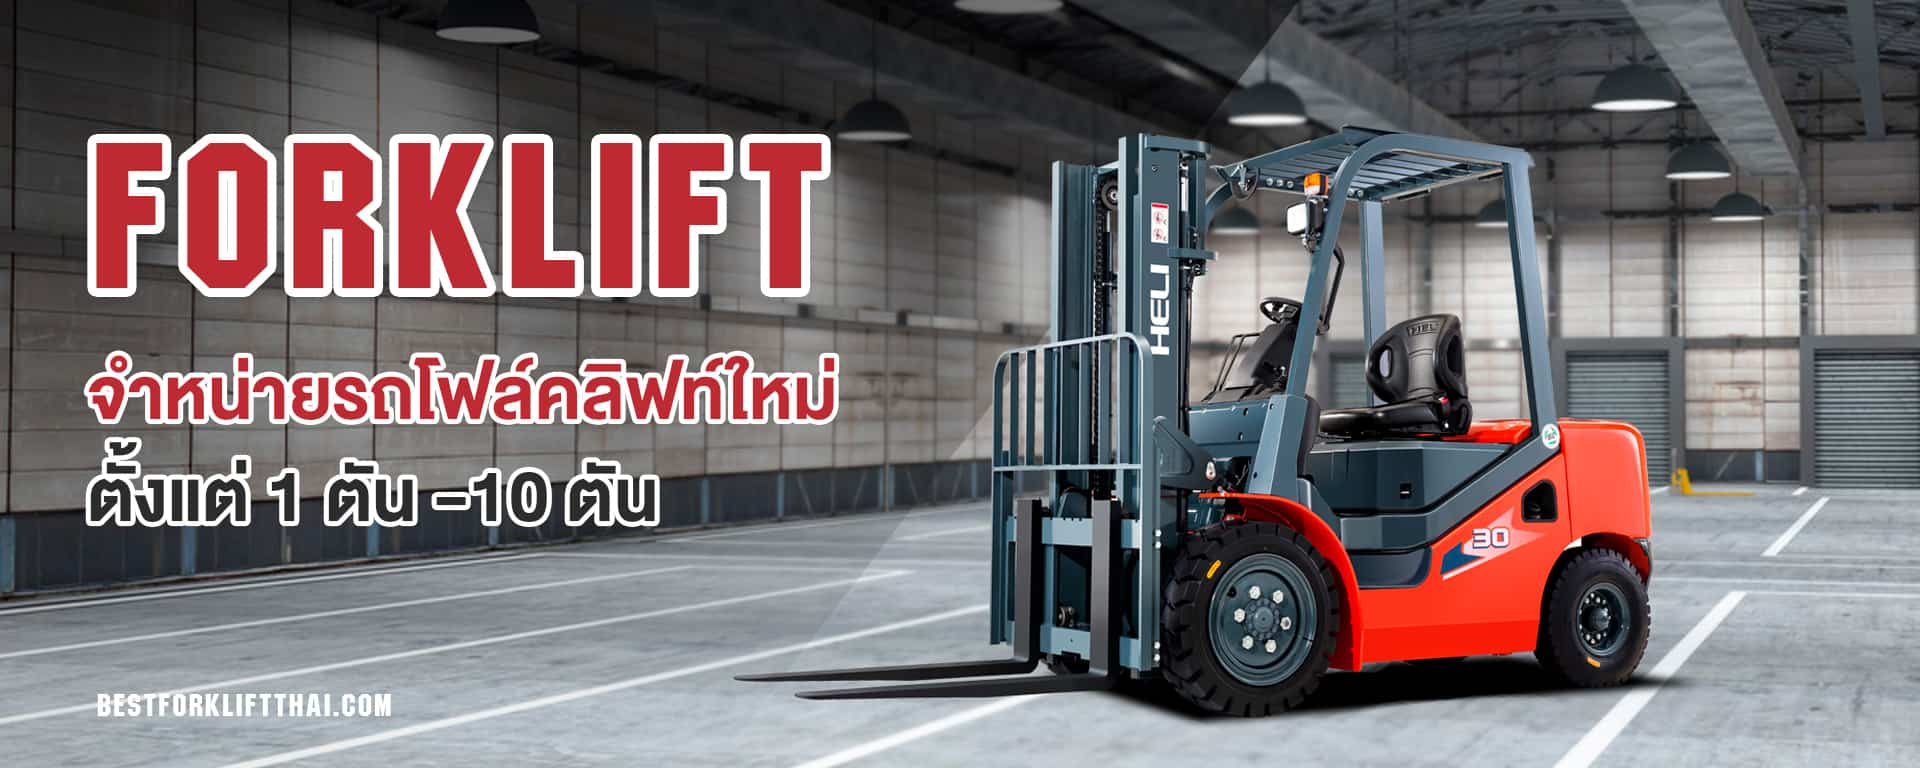 new Forklift